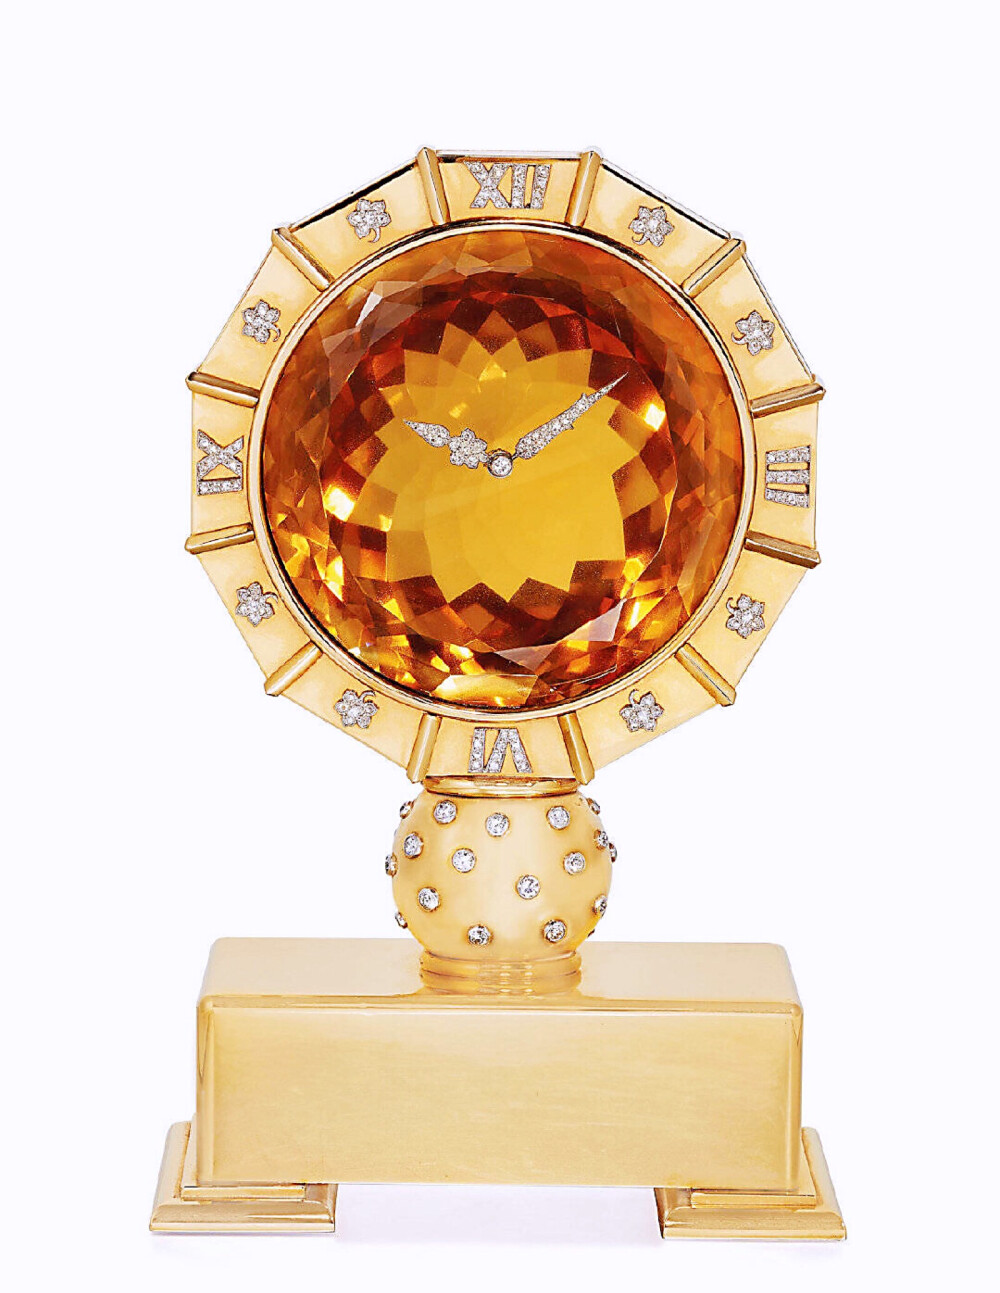  卡地亚神秘钟 ·
1912年，卡地亚首次推出‘MYSTERY’系列神秘钟，被称为“钟表史上的奇迹。”
神秘钟多以缟玛瑙、水晶、“水果锦囊”TUTTI FRUTTI等珠宝元素构成，具有ART DECO装饰艺术风格。